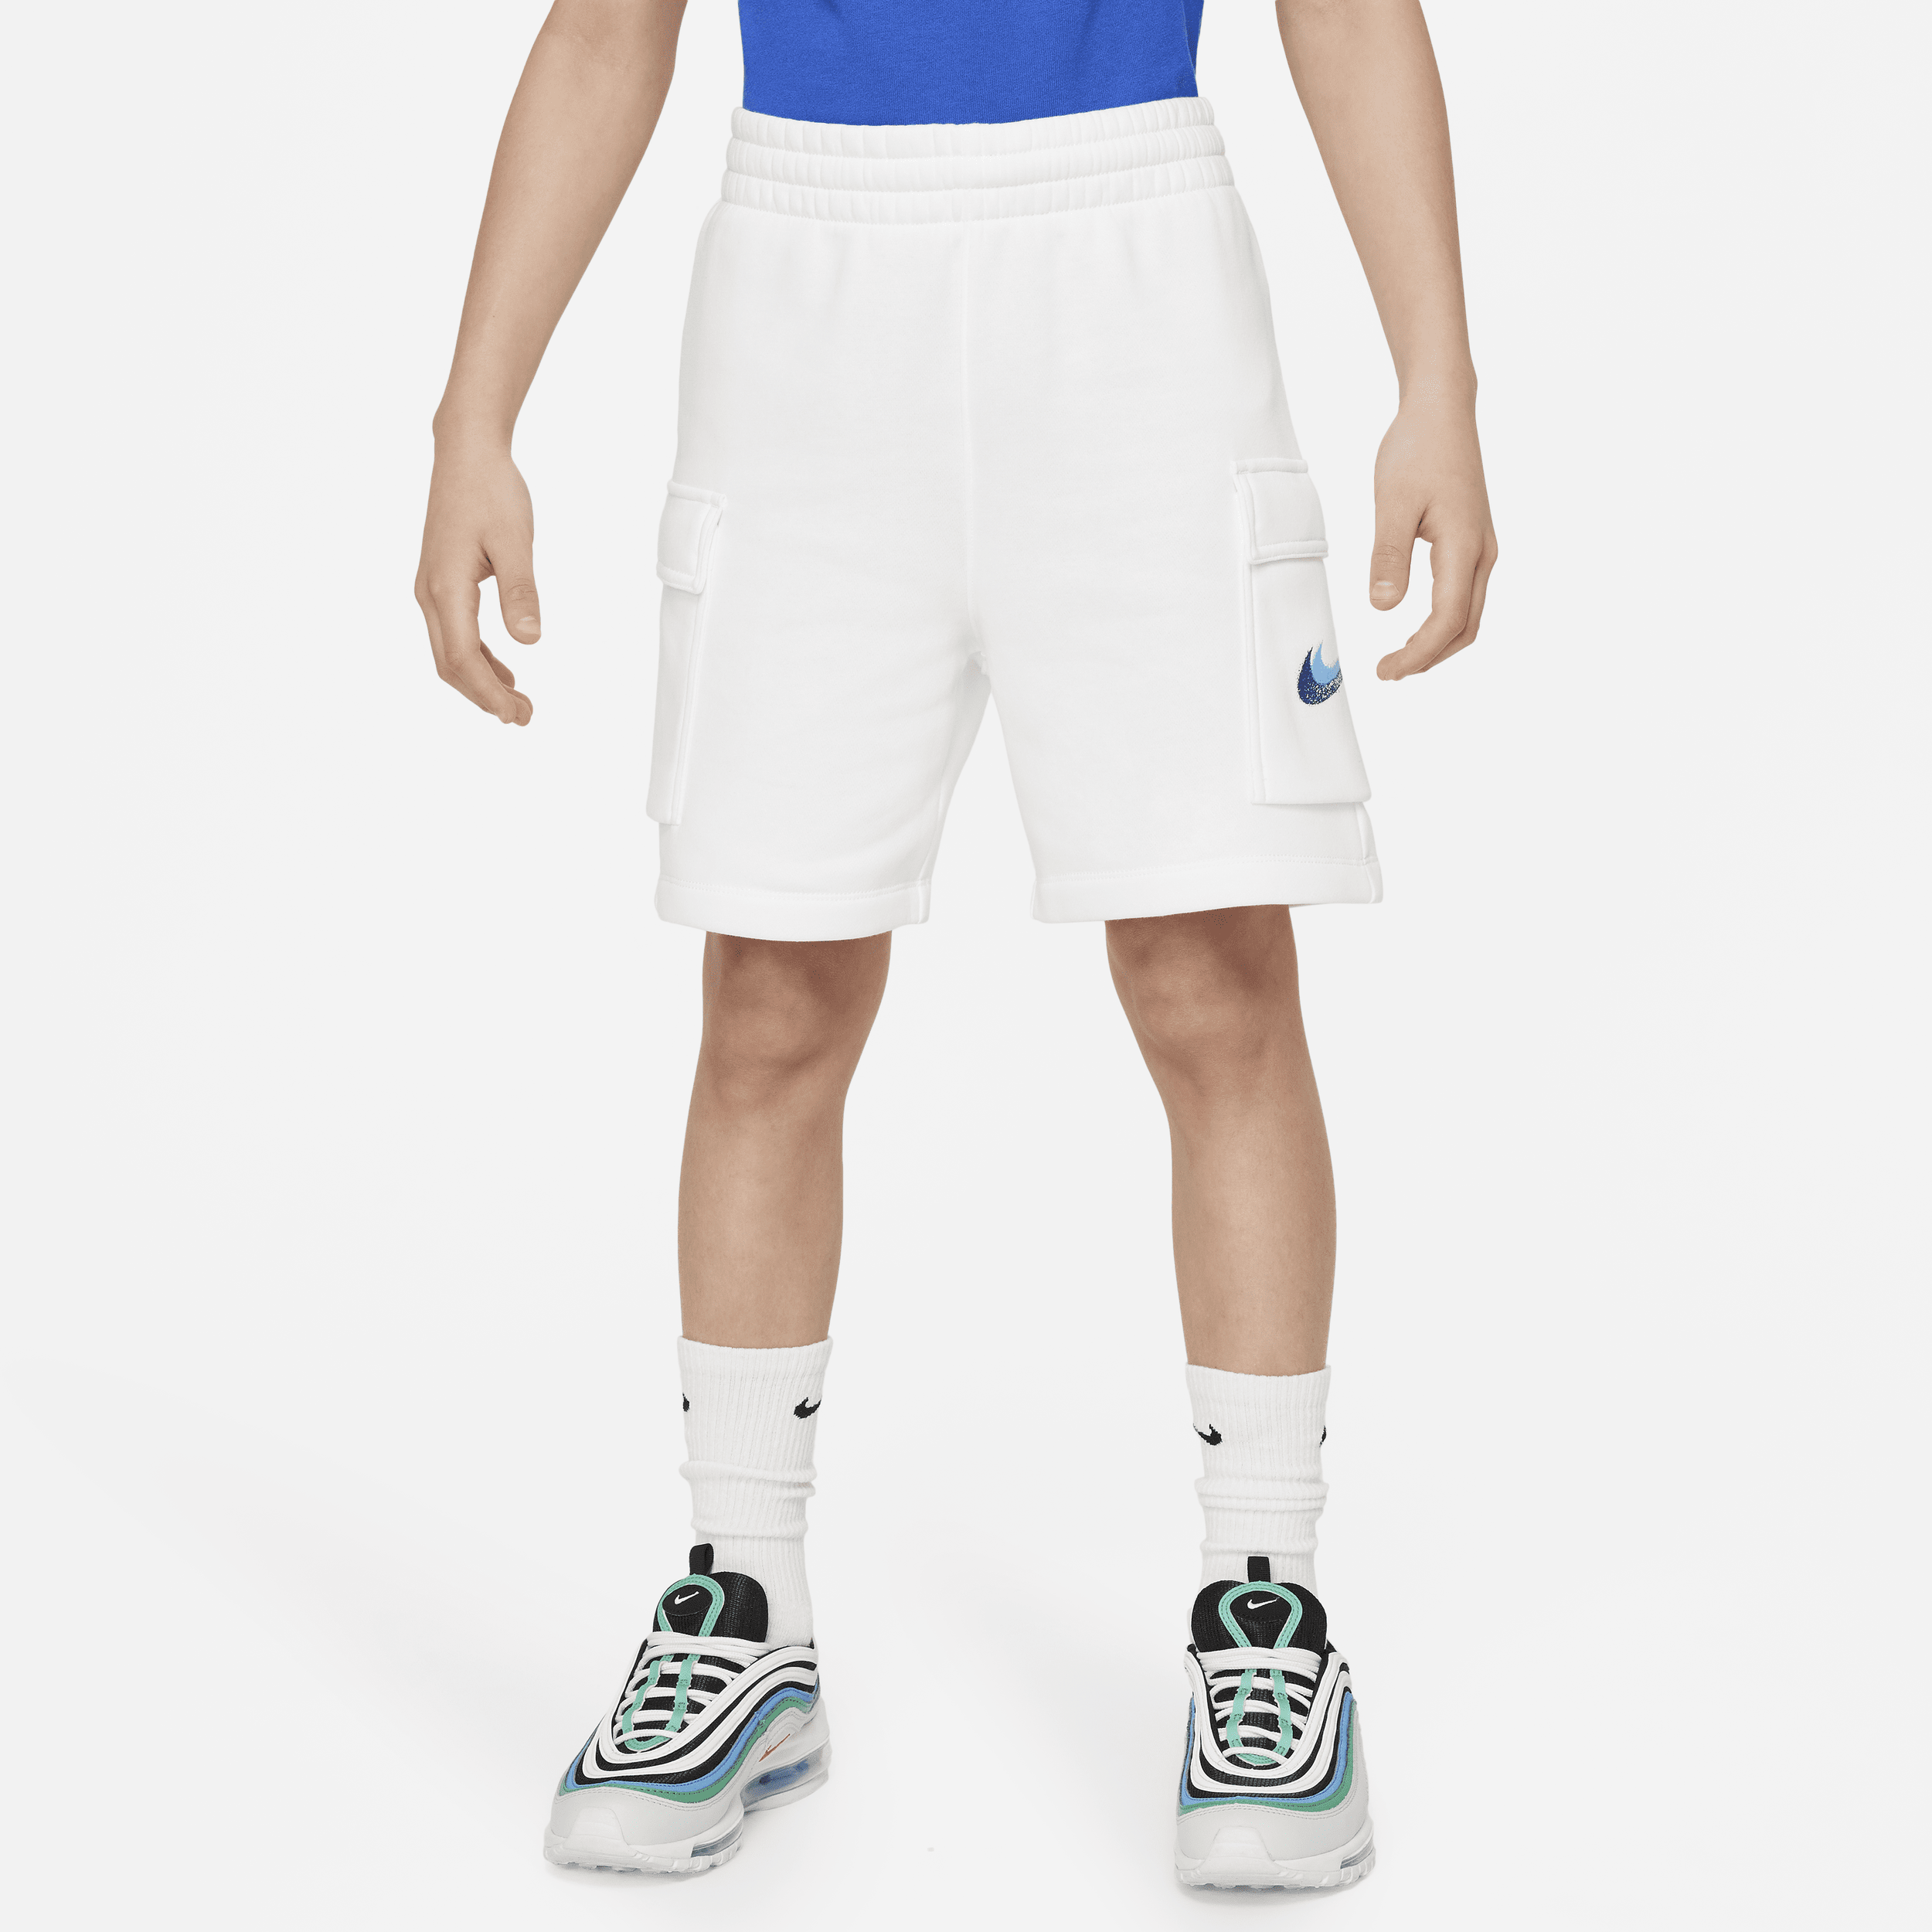 Shorts in fleece Nike Sportswear Standard Issue – Ragazzo - Bianco